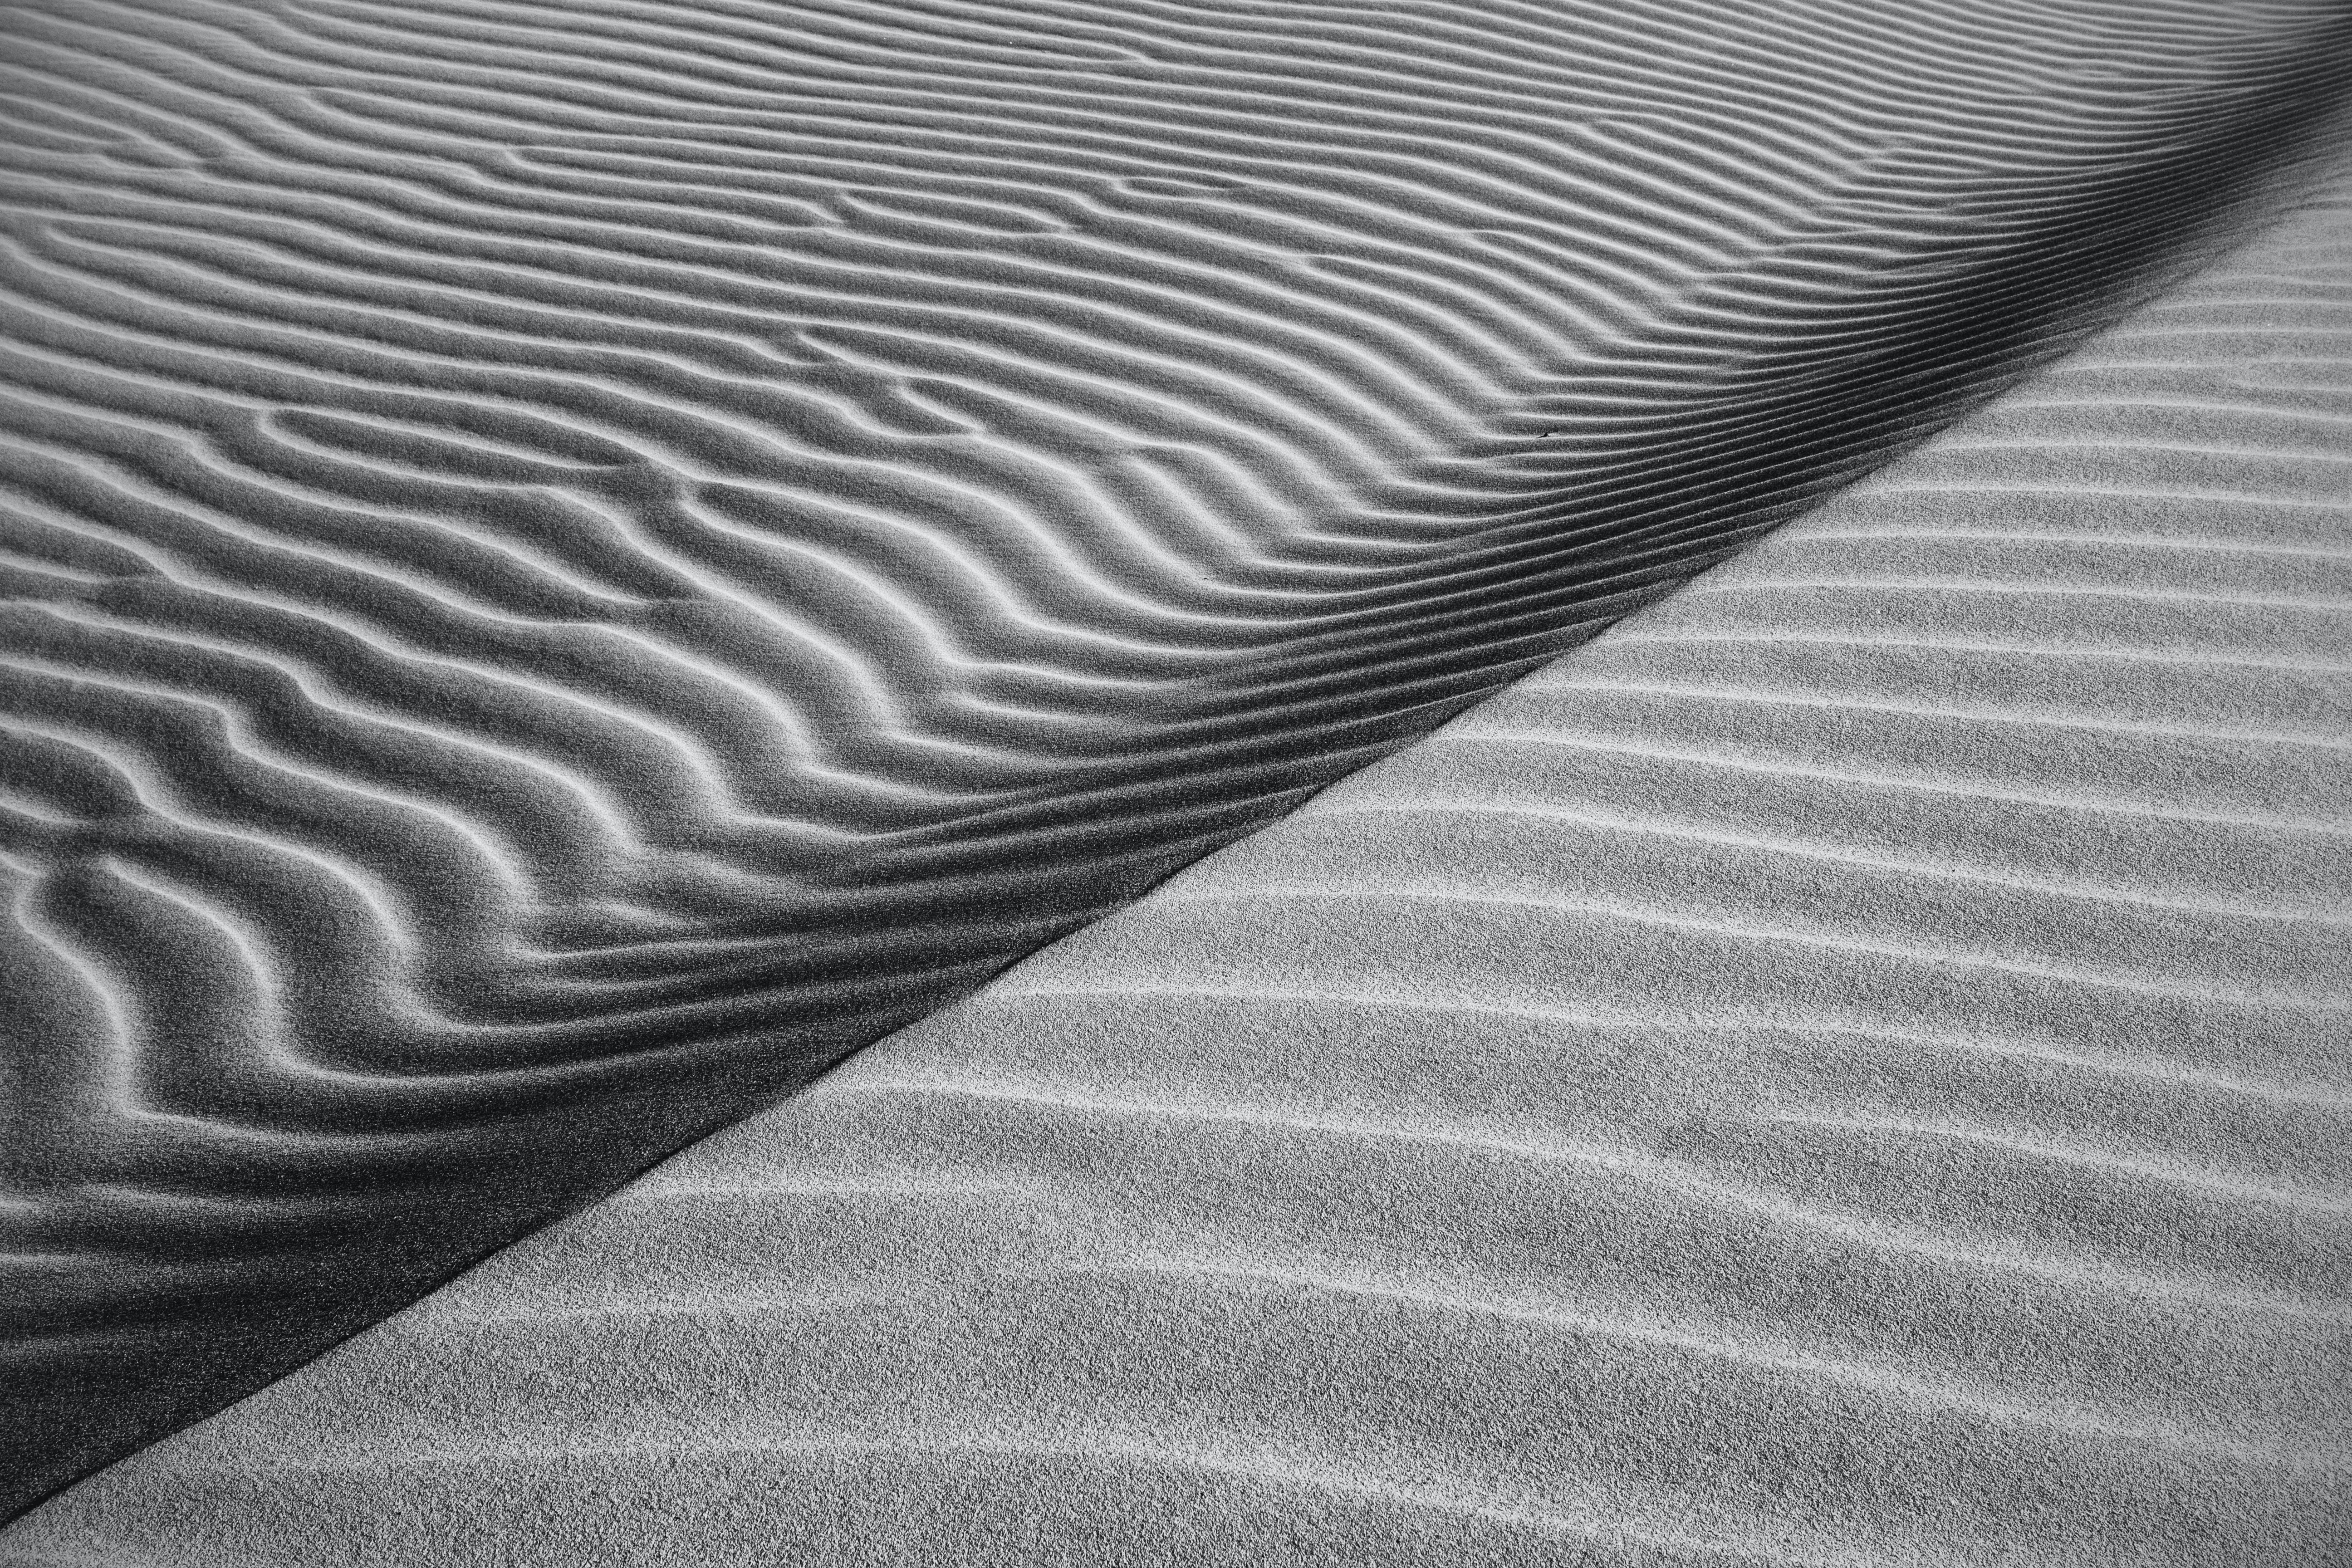 Dune cellphone Wallpaper